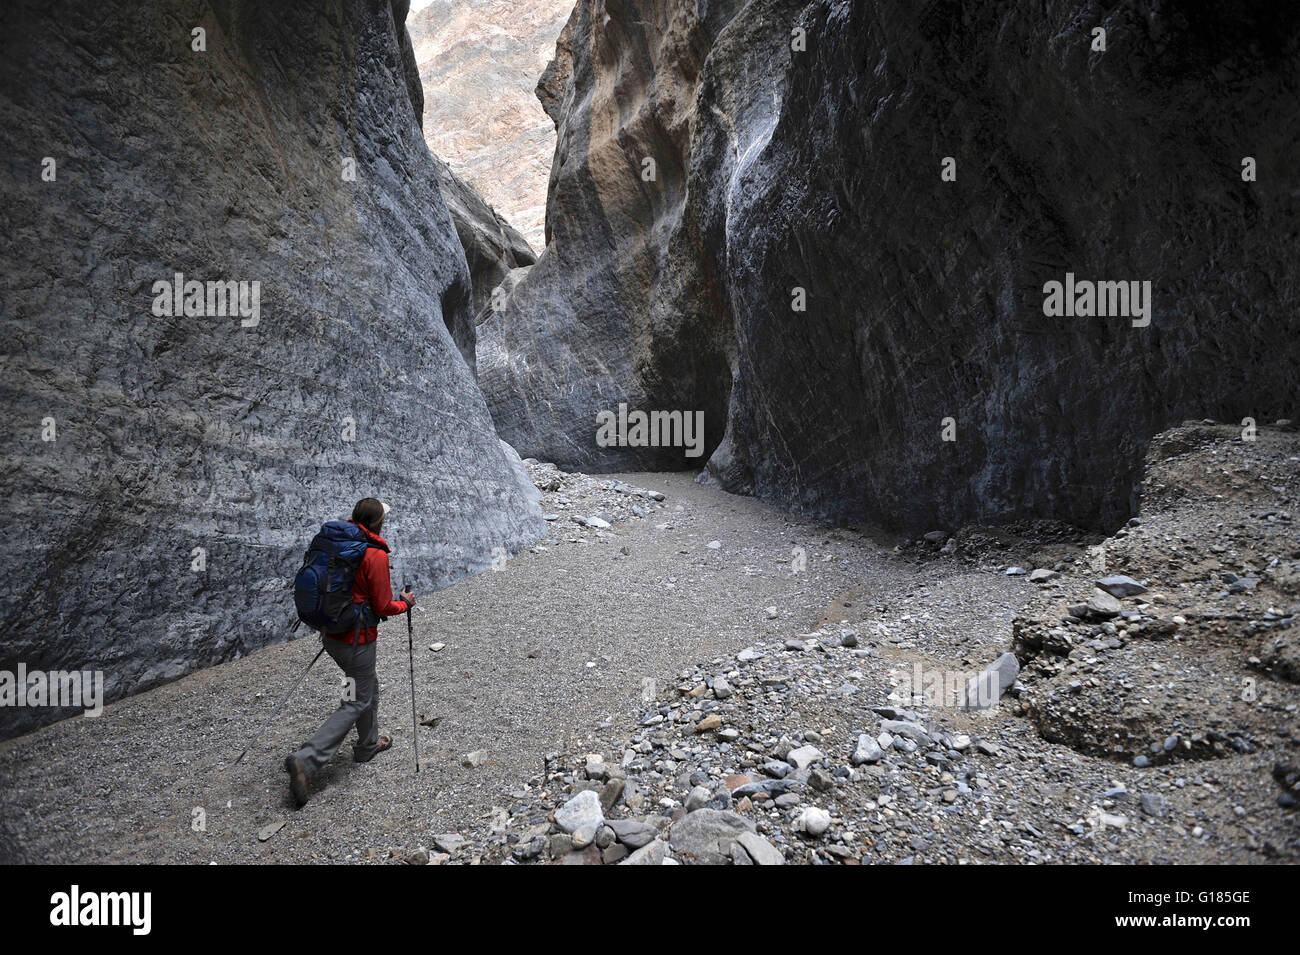 La découverte des formations rocheuses, randonneur en Canyon, Death Valley National Park, Californie Banque D'Images